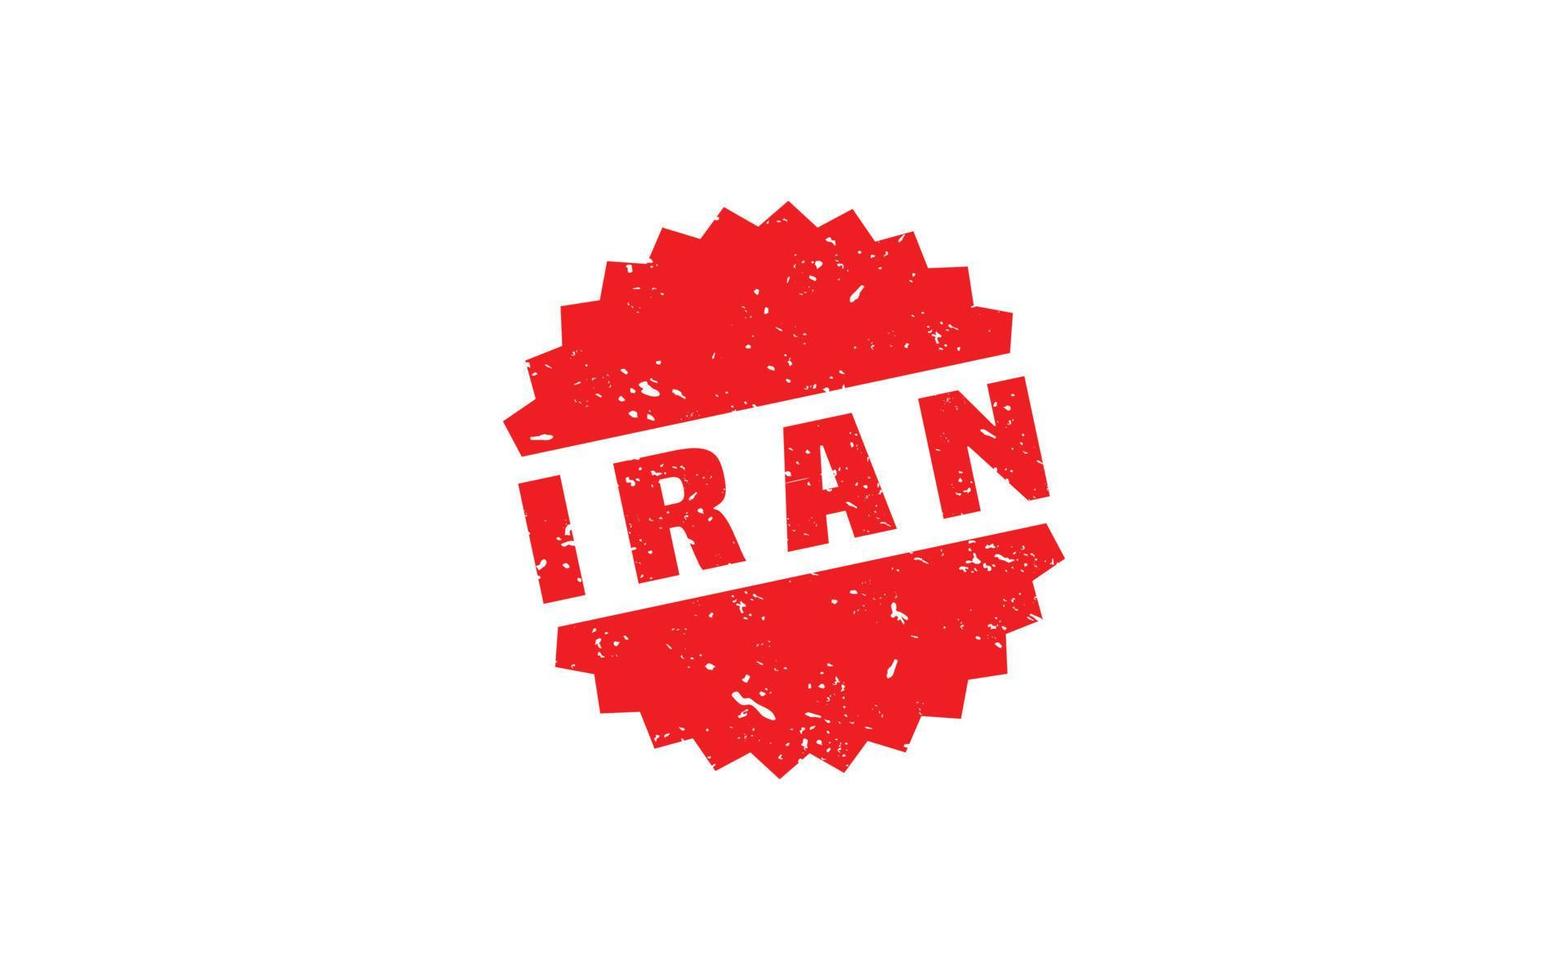 Caoutchouc timbre iran avec style grunge sur fond blanc vecteur